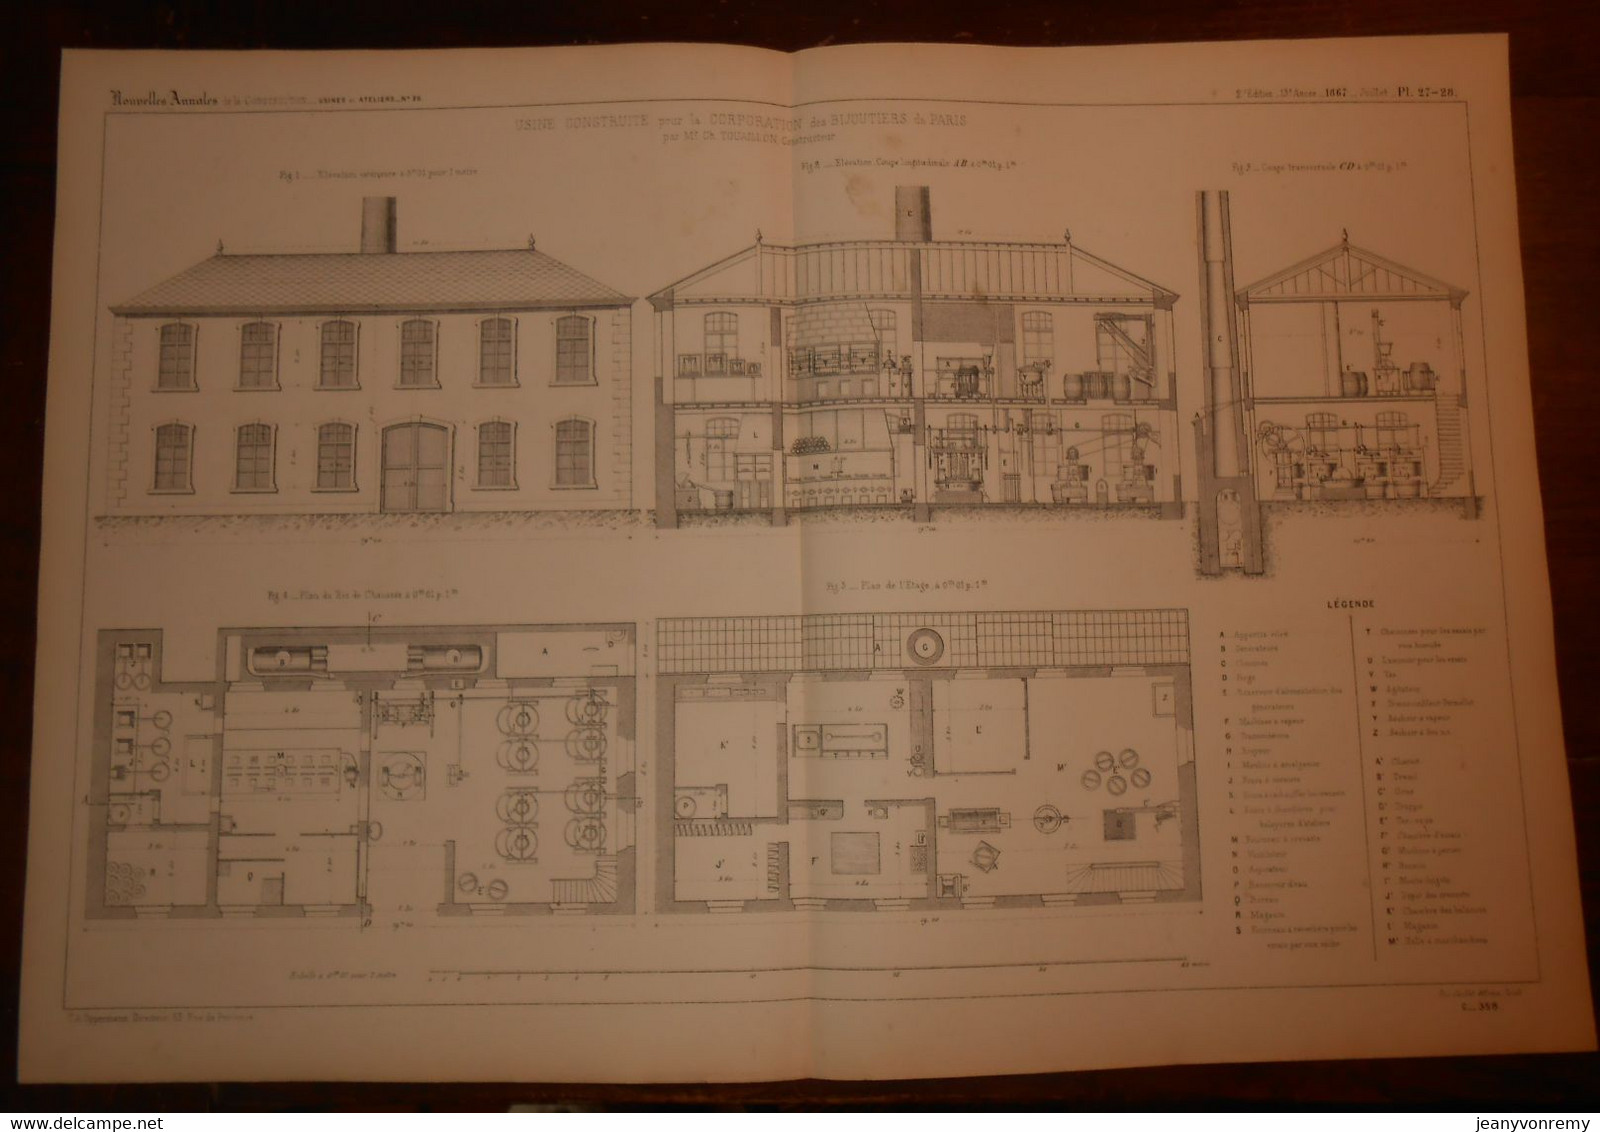 Plan De L'Usine Construite Pour La Corporation Des Bijoutiers De Paris.1867. - Andere Pläne